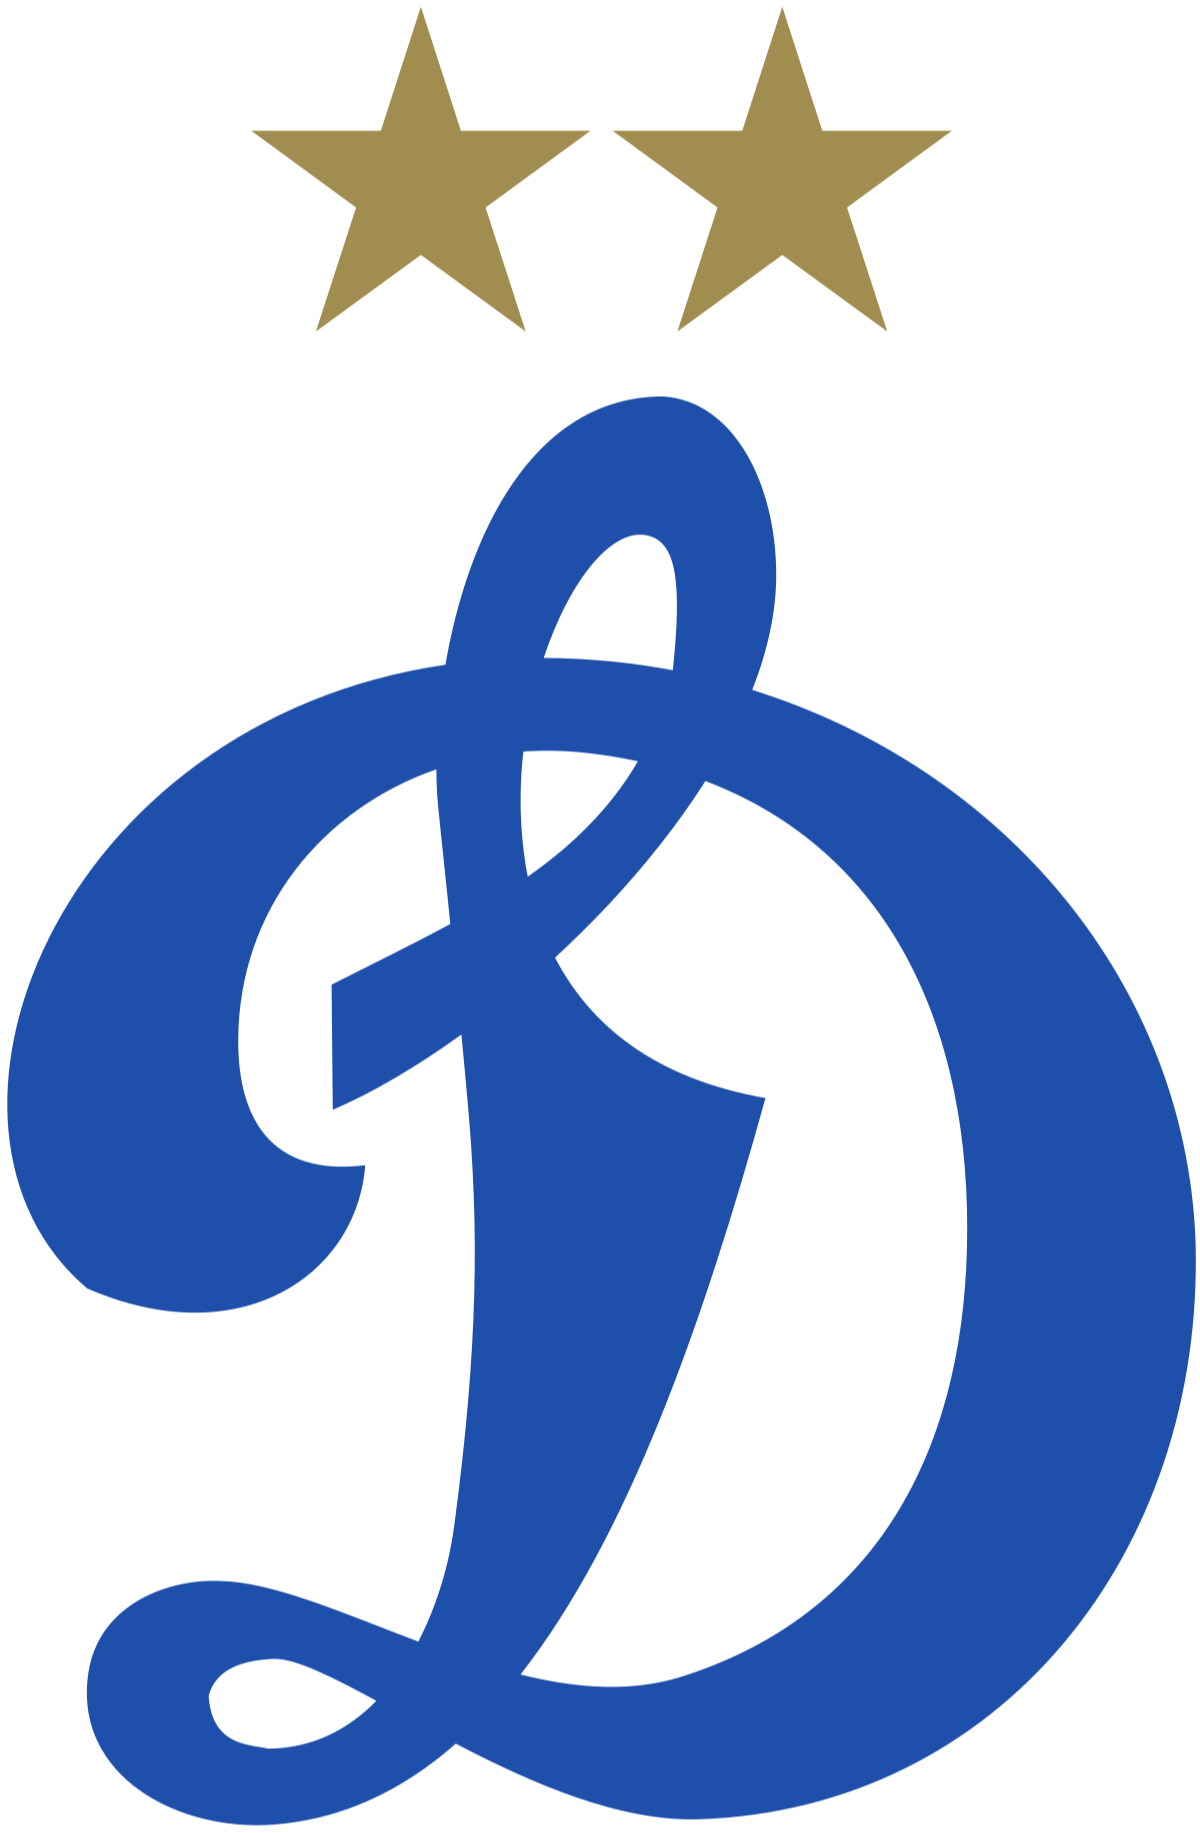 莫迪纳摩球队logo